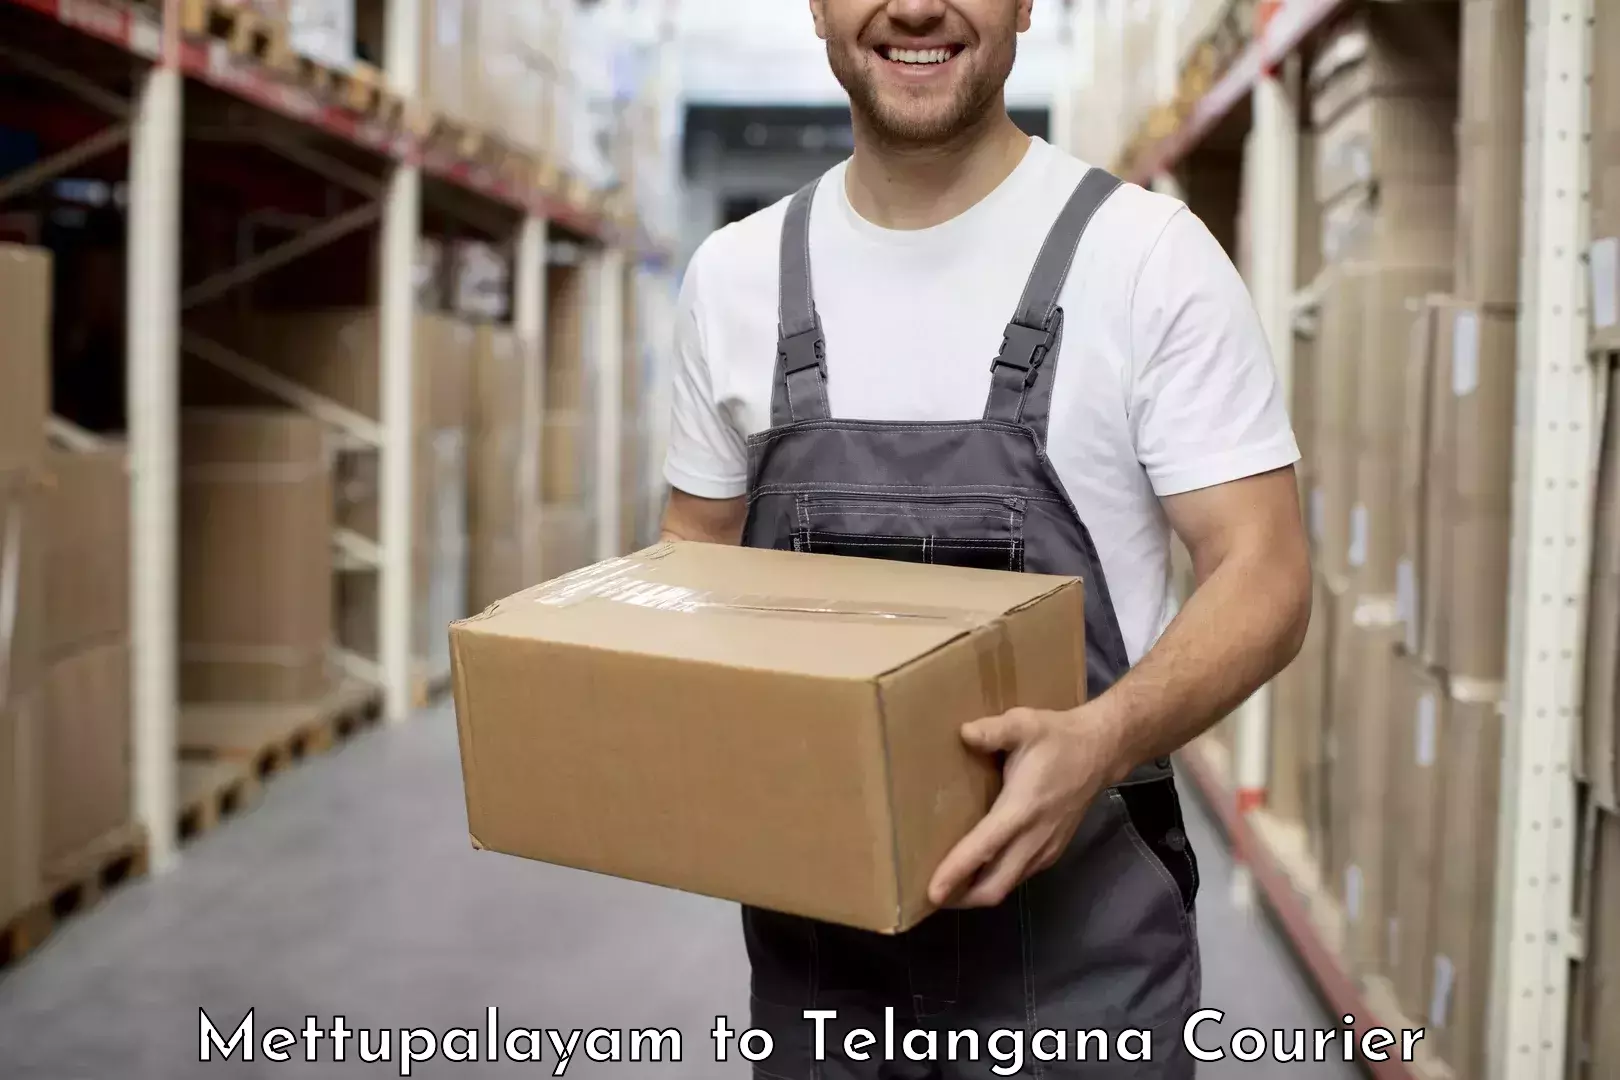 Logistics service provider Mettupalayam to Telangana